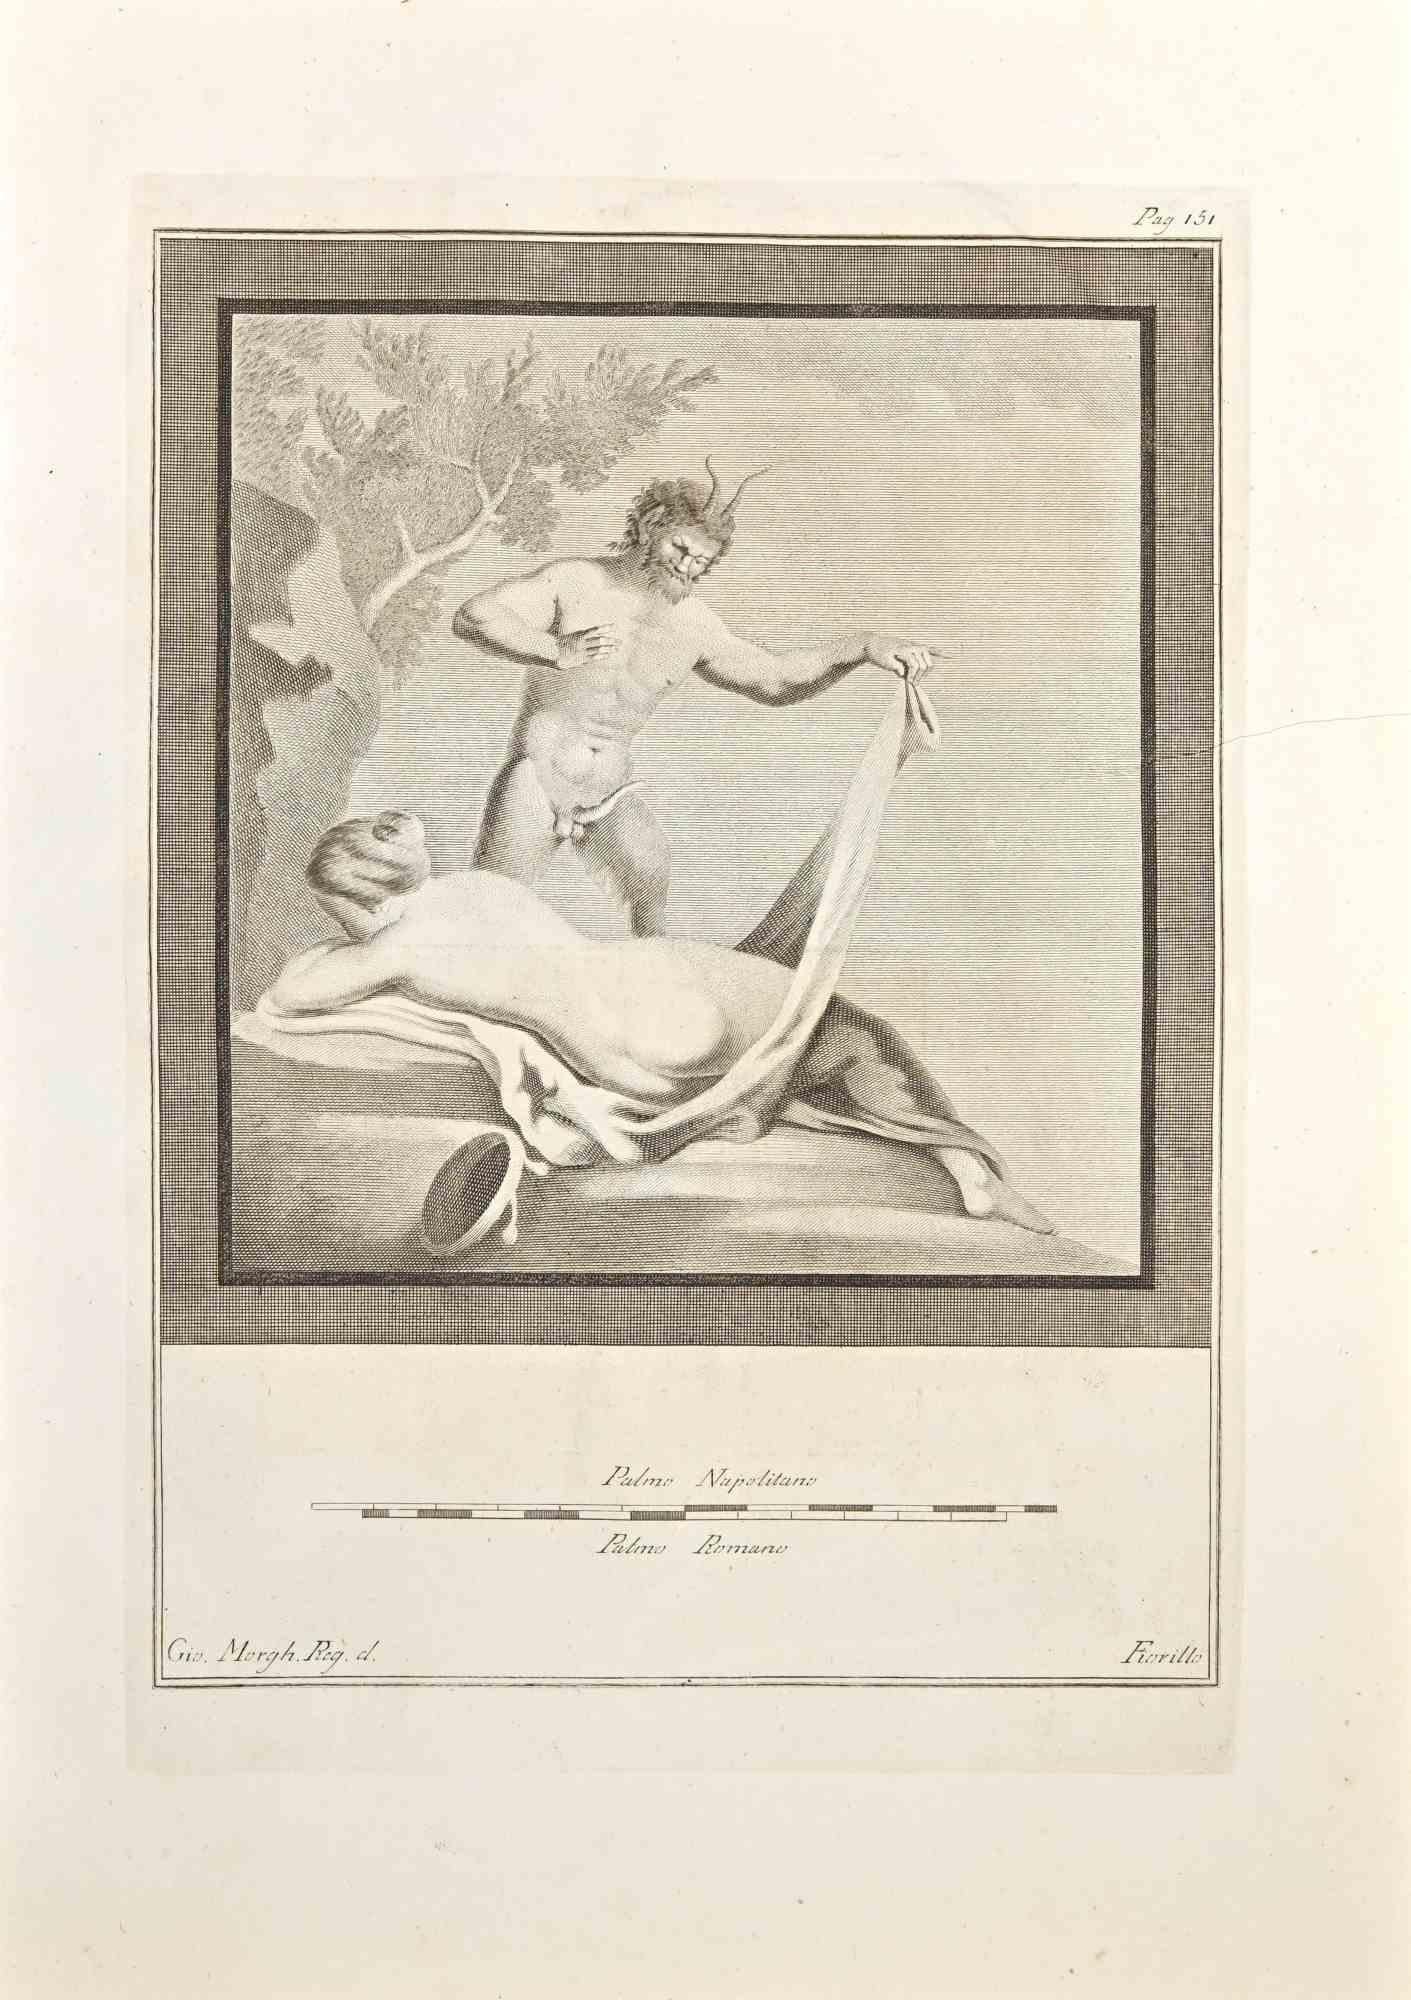 Pan und Frauenakt aus den "Altertümern von Herculaneum" ist eine Radierung auf Papier von Giovanni Morghen aus dem 18. Jahrhundert.

Signiert auf der Platte.

Guter Zustand mit einigen Faltungen.

Die Radierung gehört zu der Druckserie "Antiquities